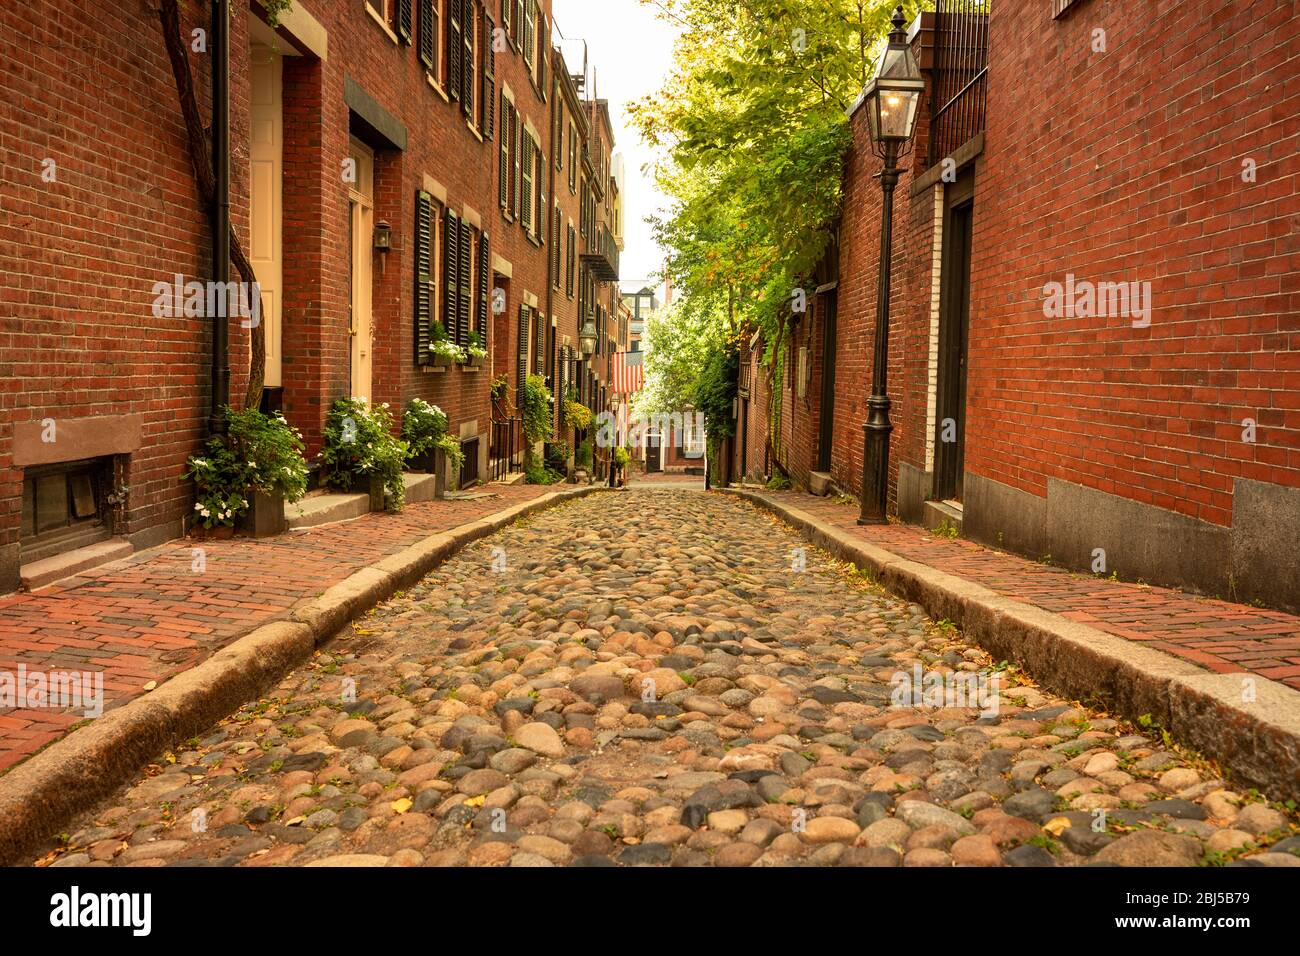 Historical Acorn street in the Beacon Hill neighbourhood of Boston, Massachusetts Stock Photo